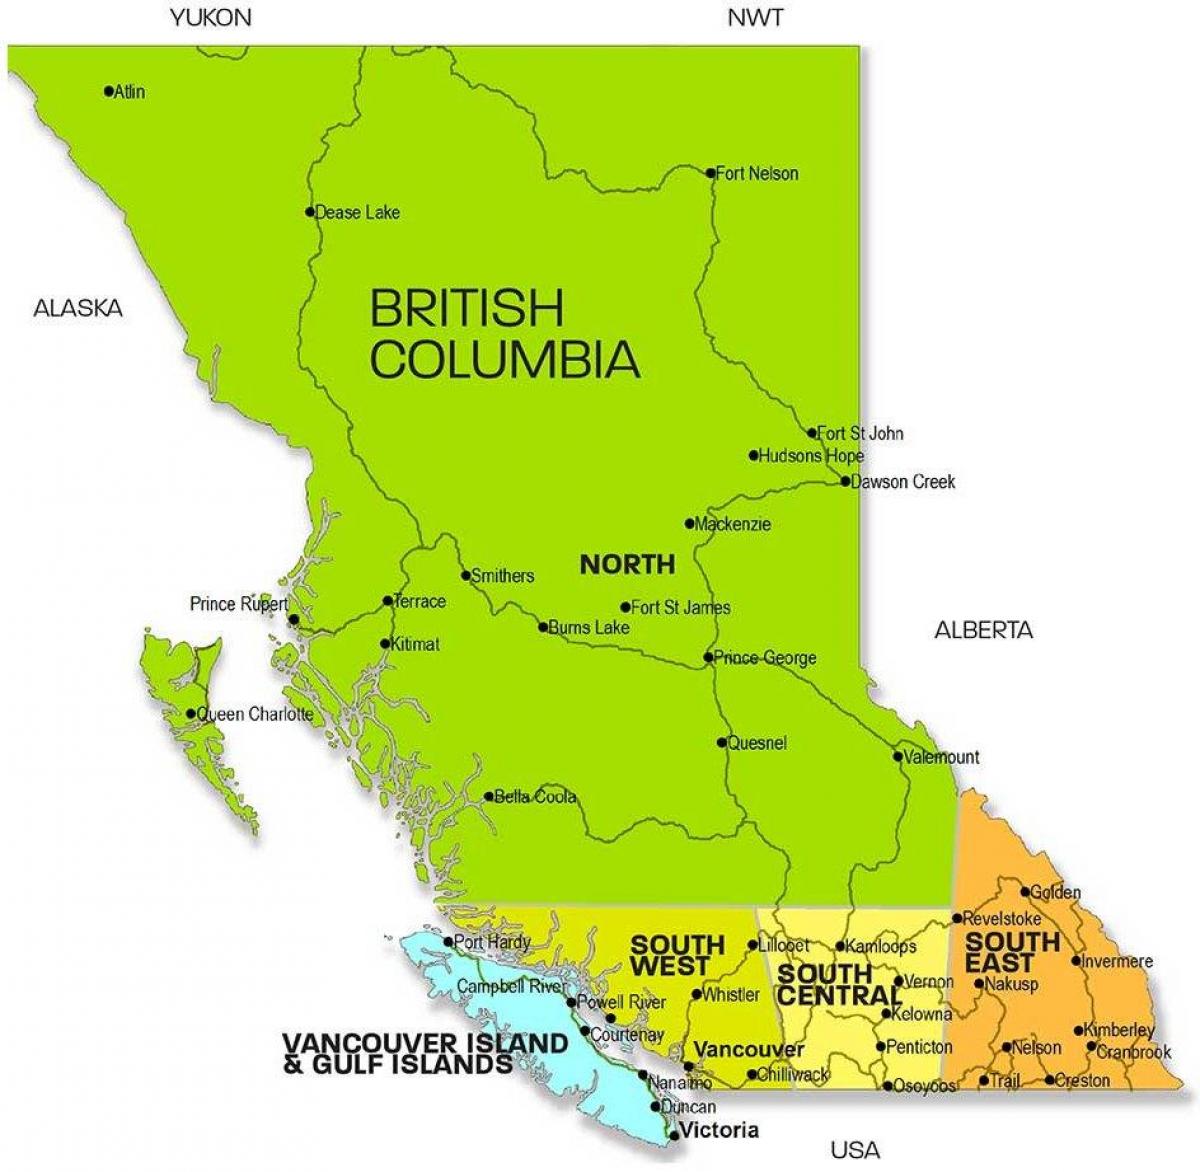 नक्शा ब्रिटिश कोलंबिया के क्षेत्रों